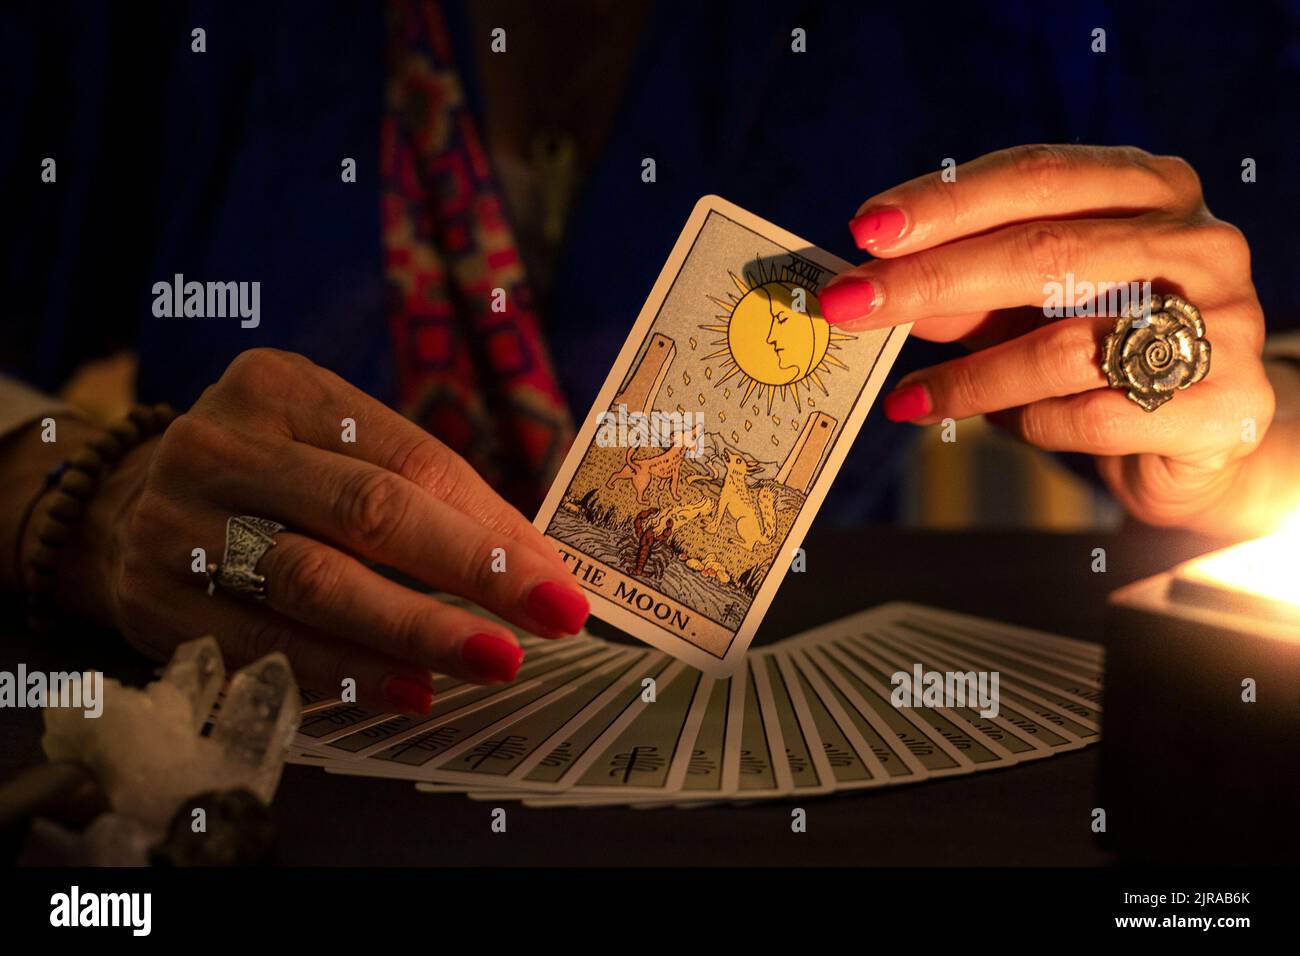 Les mains de la caissière montrant la carte de la Lune tarot, symbole de l'intuition, pendant une lecture. Gros plan avec bougie, ambiance feutrée. Banque D'Images